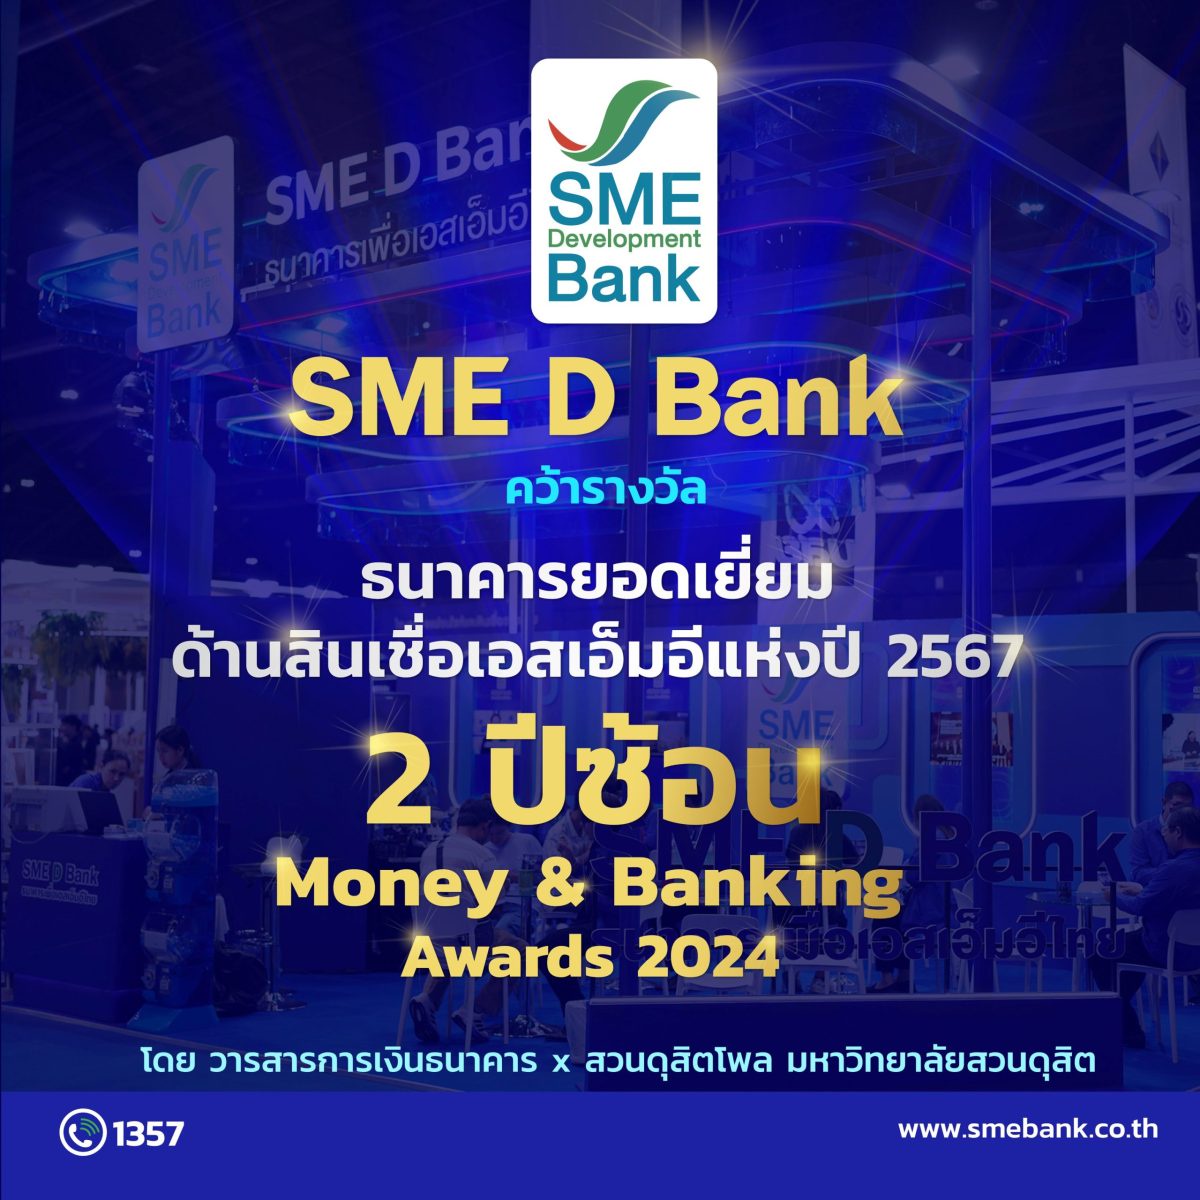 SME D Bank คว้าแชมป์ 'ธนาคารยอดเยี่ยมด้านสินเชื่อเอสเอ็มอีแห่งปี' 2 ปีซ้อน ด้วยผลิตภัณฑ์สินเชื่อตอบโจทย์โดนใจ